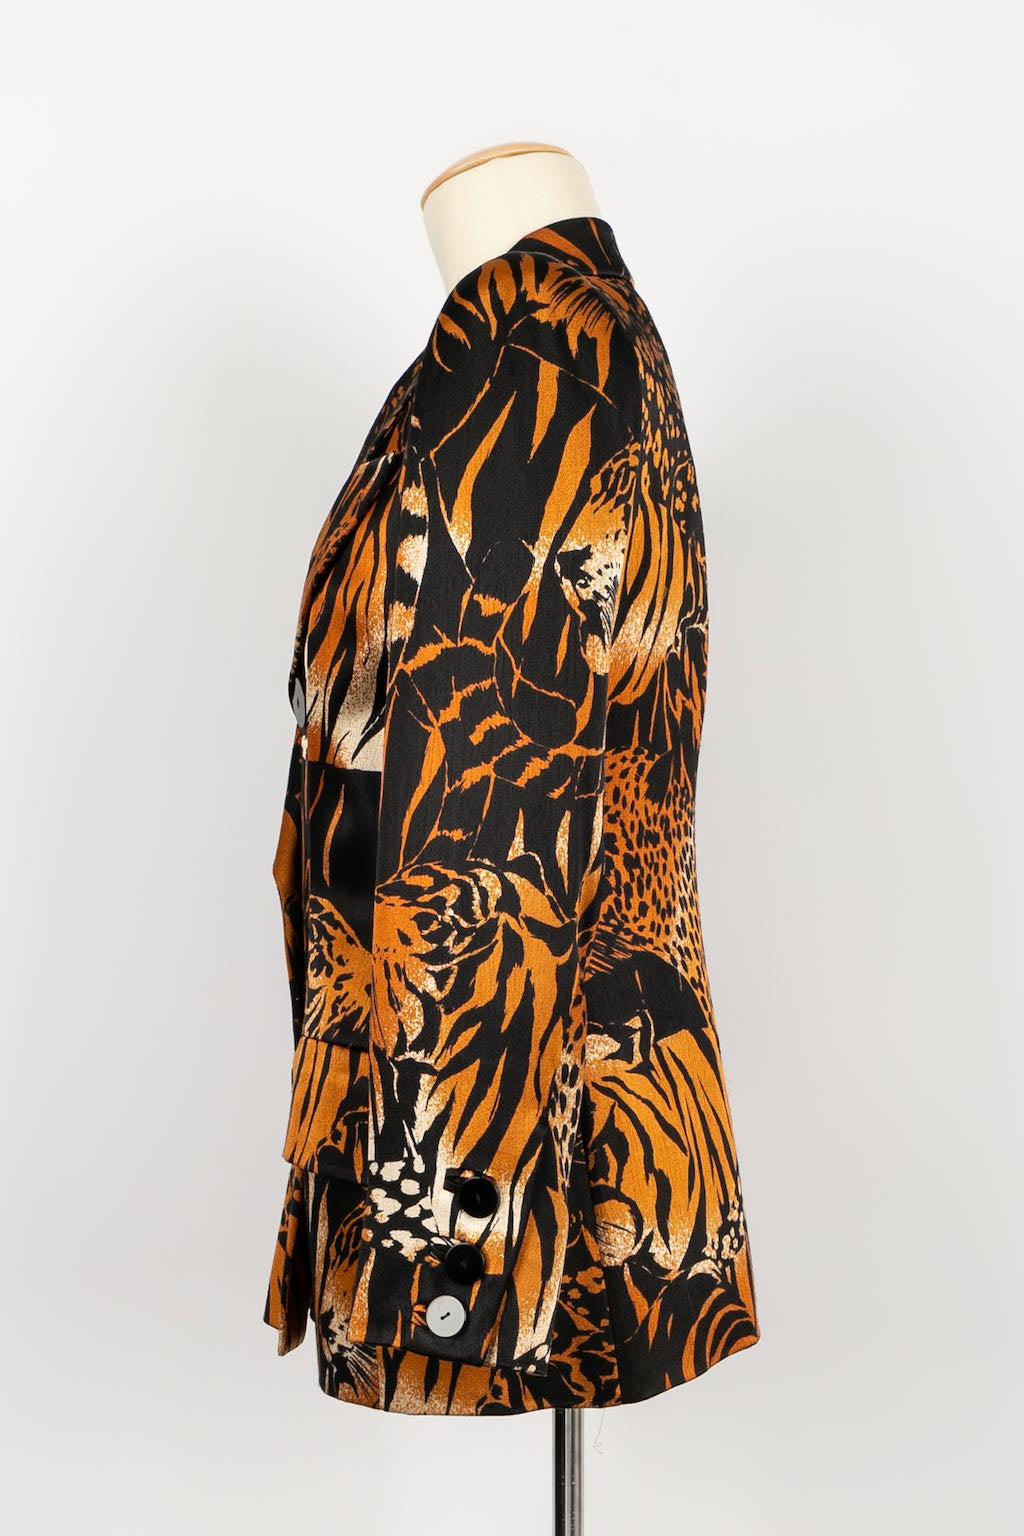 Yves Saint Laurent - (Made in France) Leopardenjacke aus den frühen 2000er Jahren. Größe 34FR.

Zusätzliche Informationen:
Zustand: Sehr guter Zustand
Abmessungen: Schulterbreite: 40 cm - Brustumfang: 45 cm - Ärmellänge: 57 cm - Länge: 65